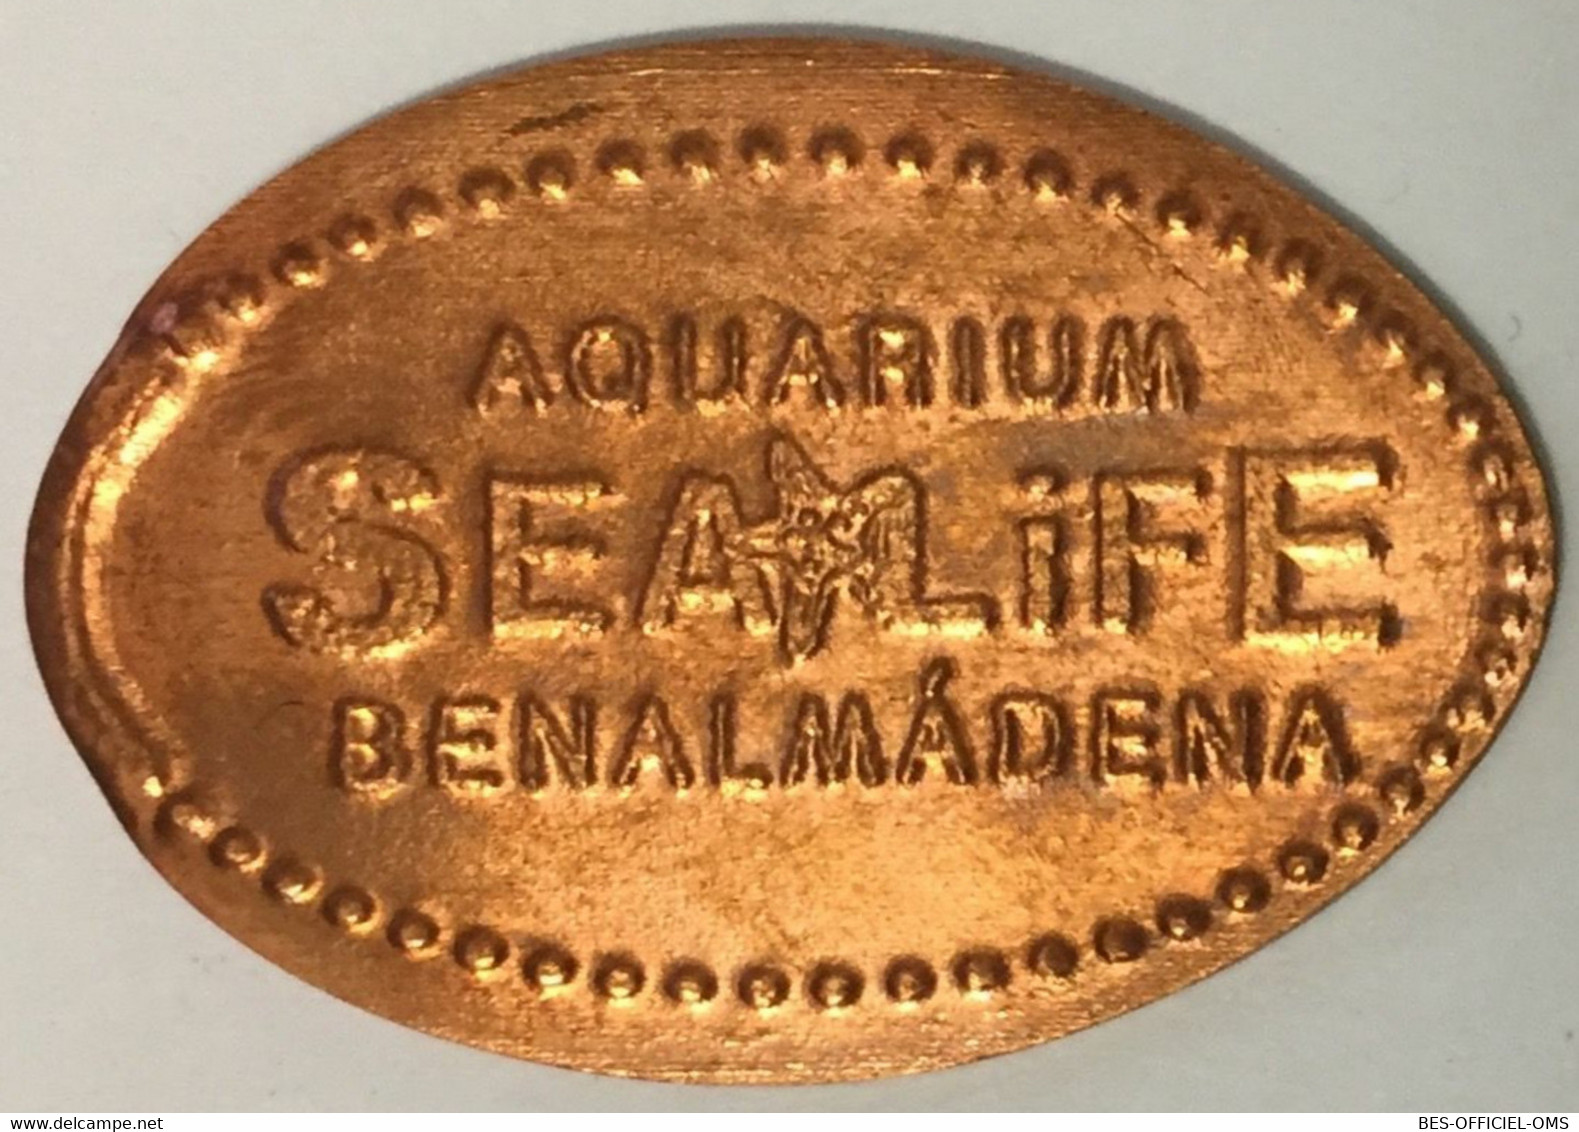 ESPAGNE AQUARIUM SEA LIFE BENALMÀDENA PIÈCE ÉCRASÉE ELONGATED COIN MEDAILLE TOURISTIQUE MEDALS TOKENS PIÈCE MONNAIE - Souvenir-Medaille (elongated Coins)